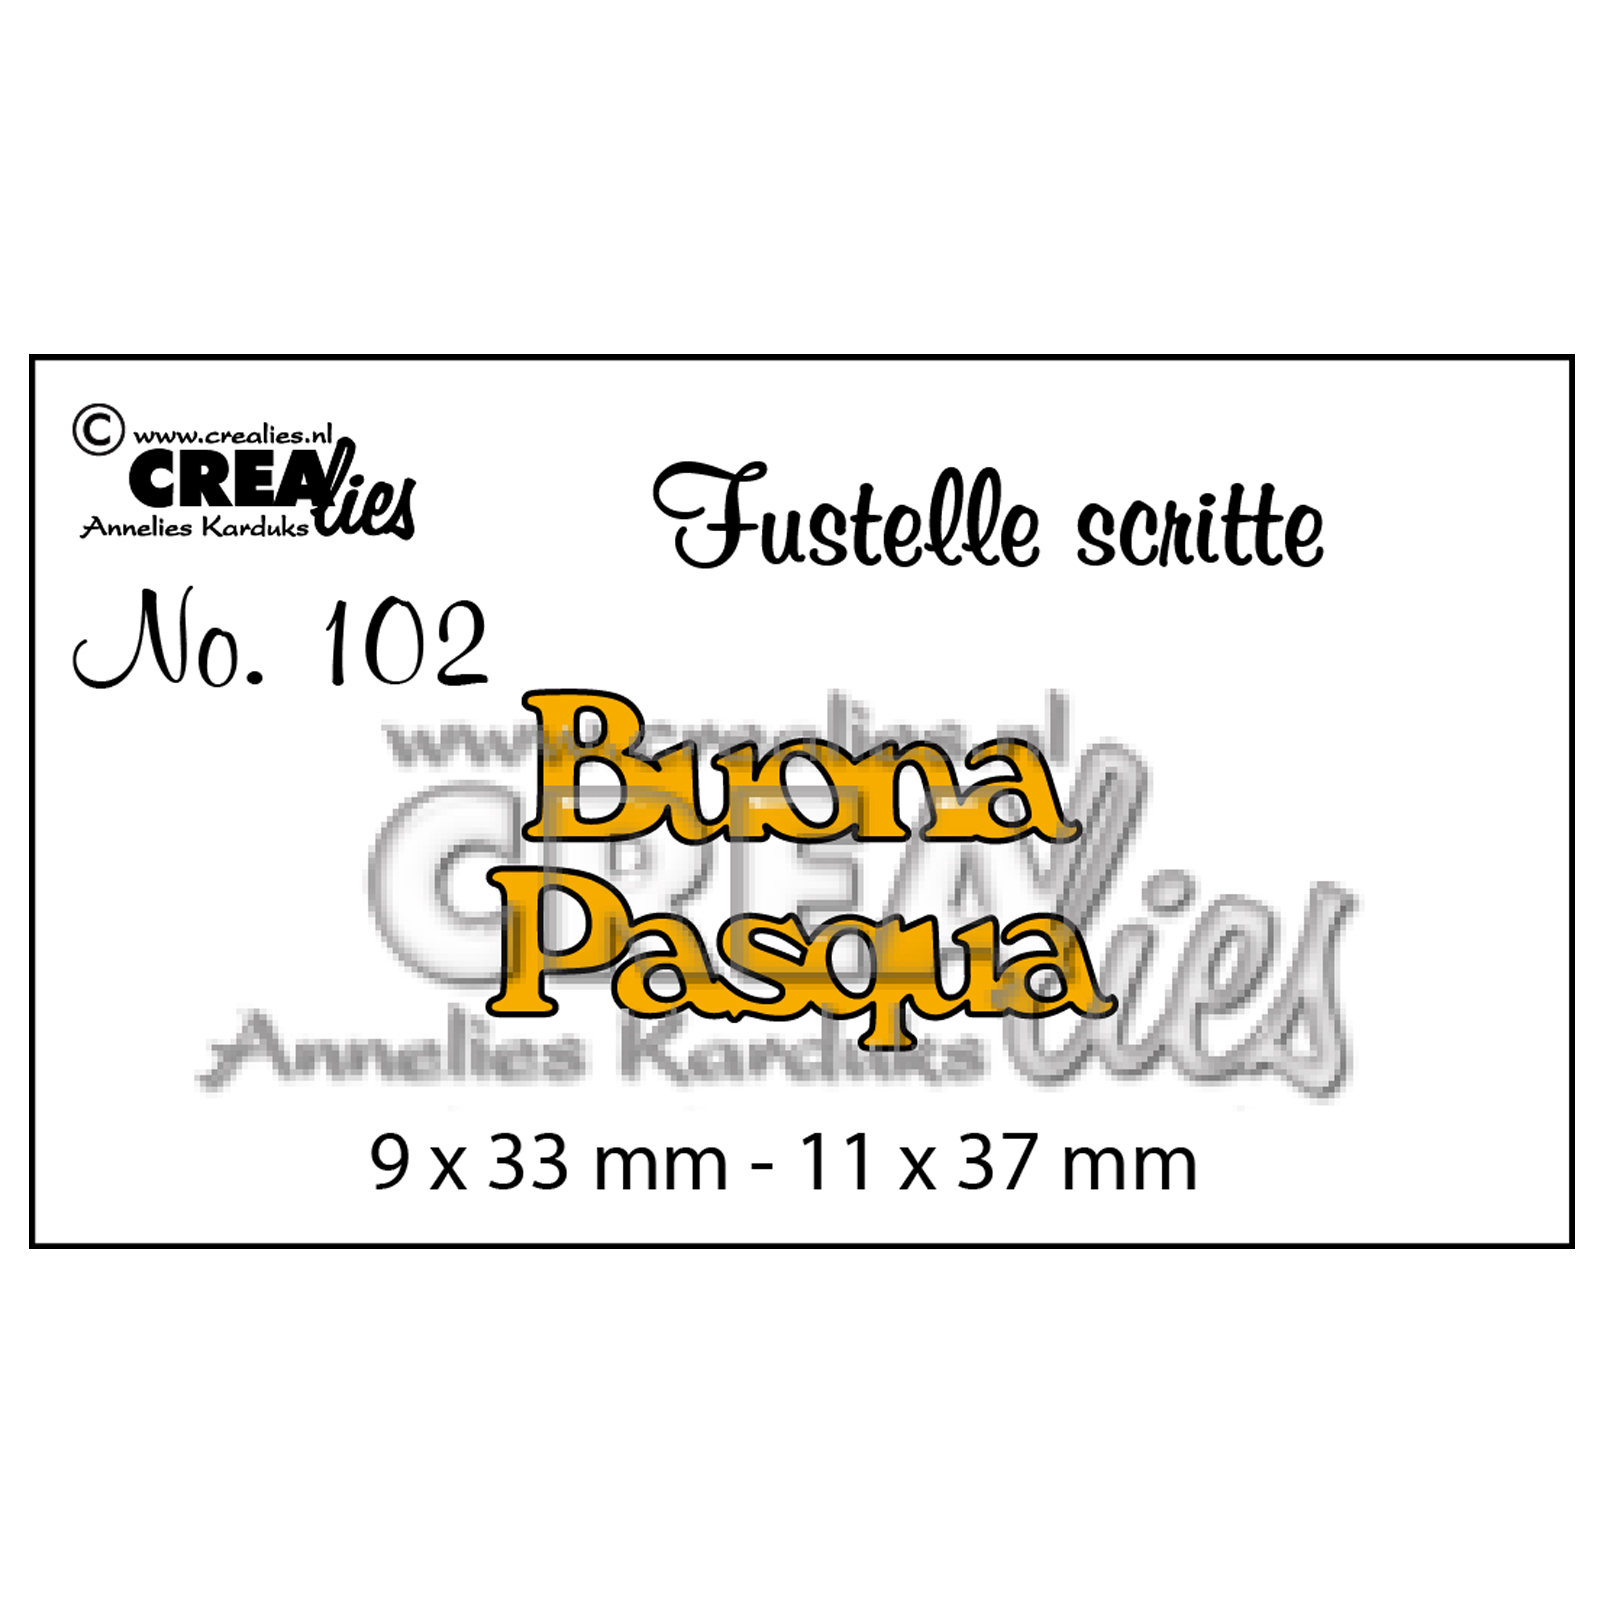 Crealies • Plantilla de corte con texto en italiano no.102 "Buona Pasqua"